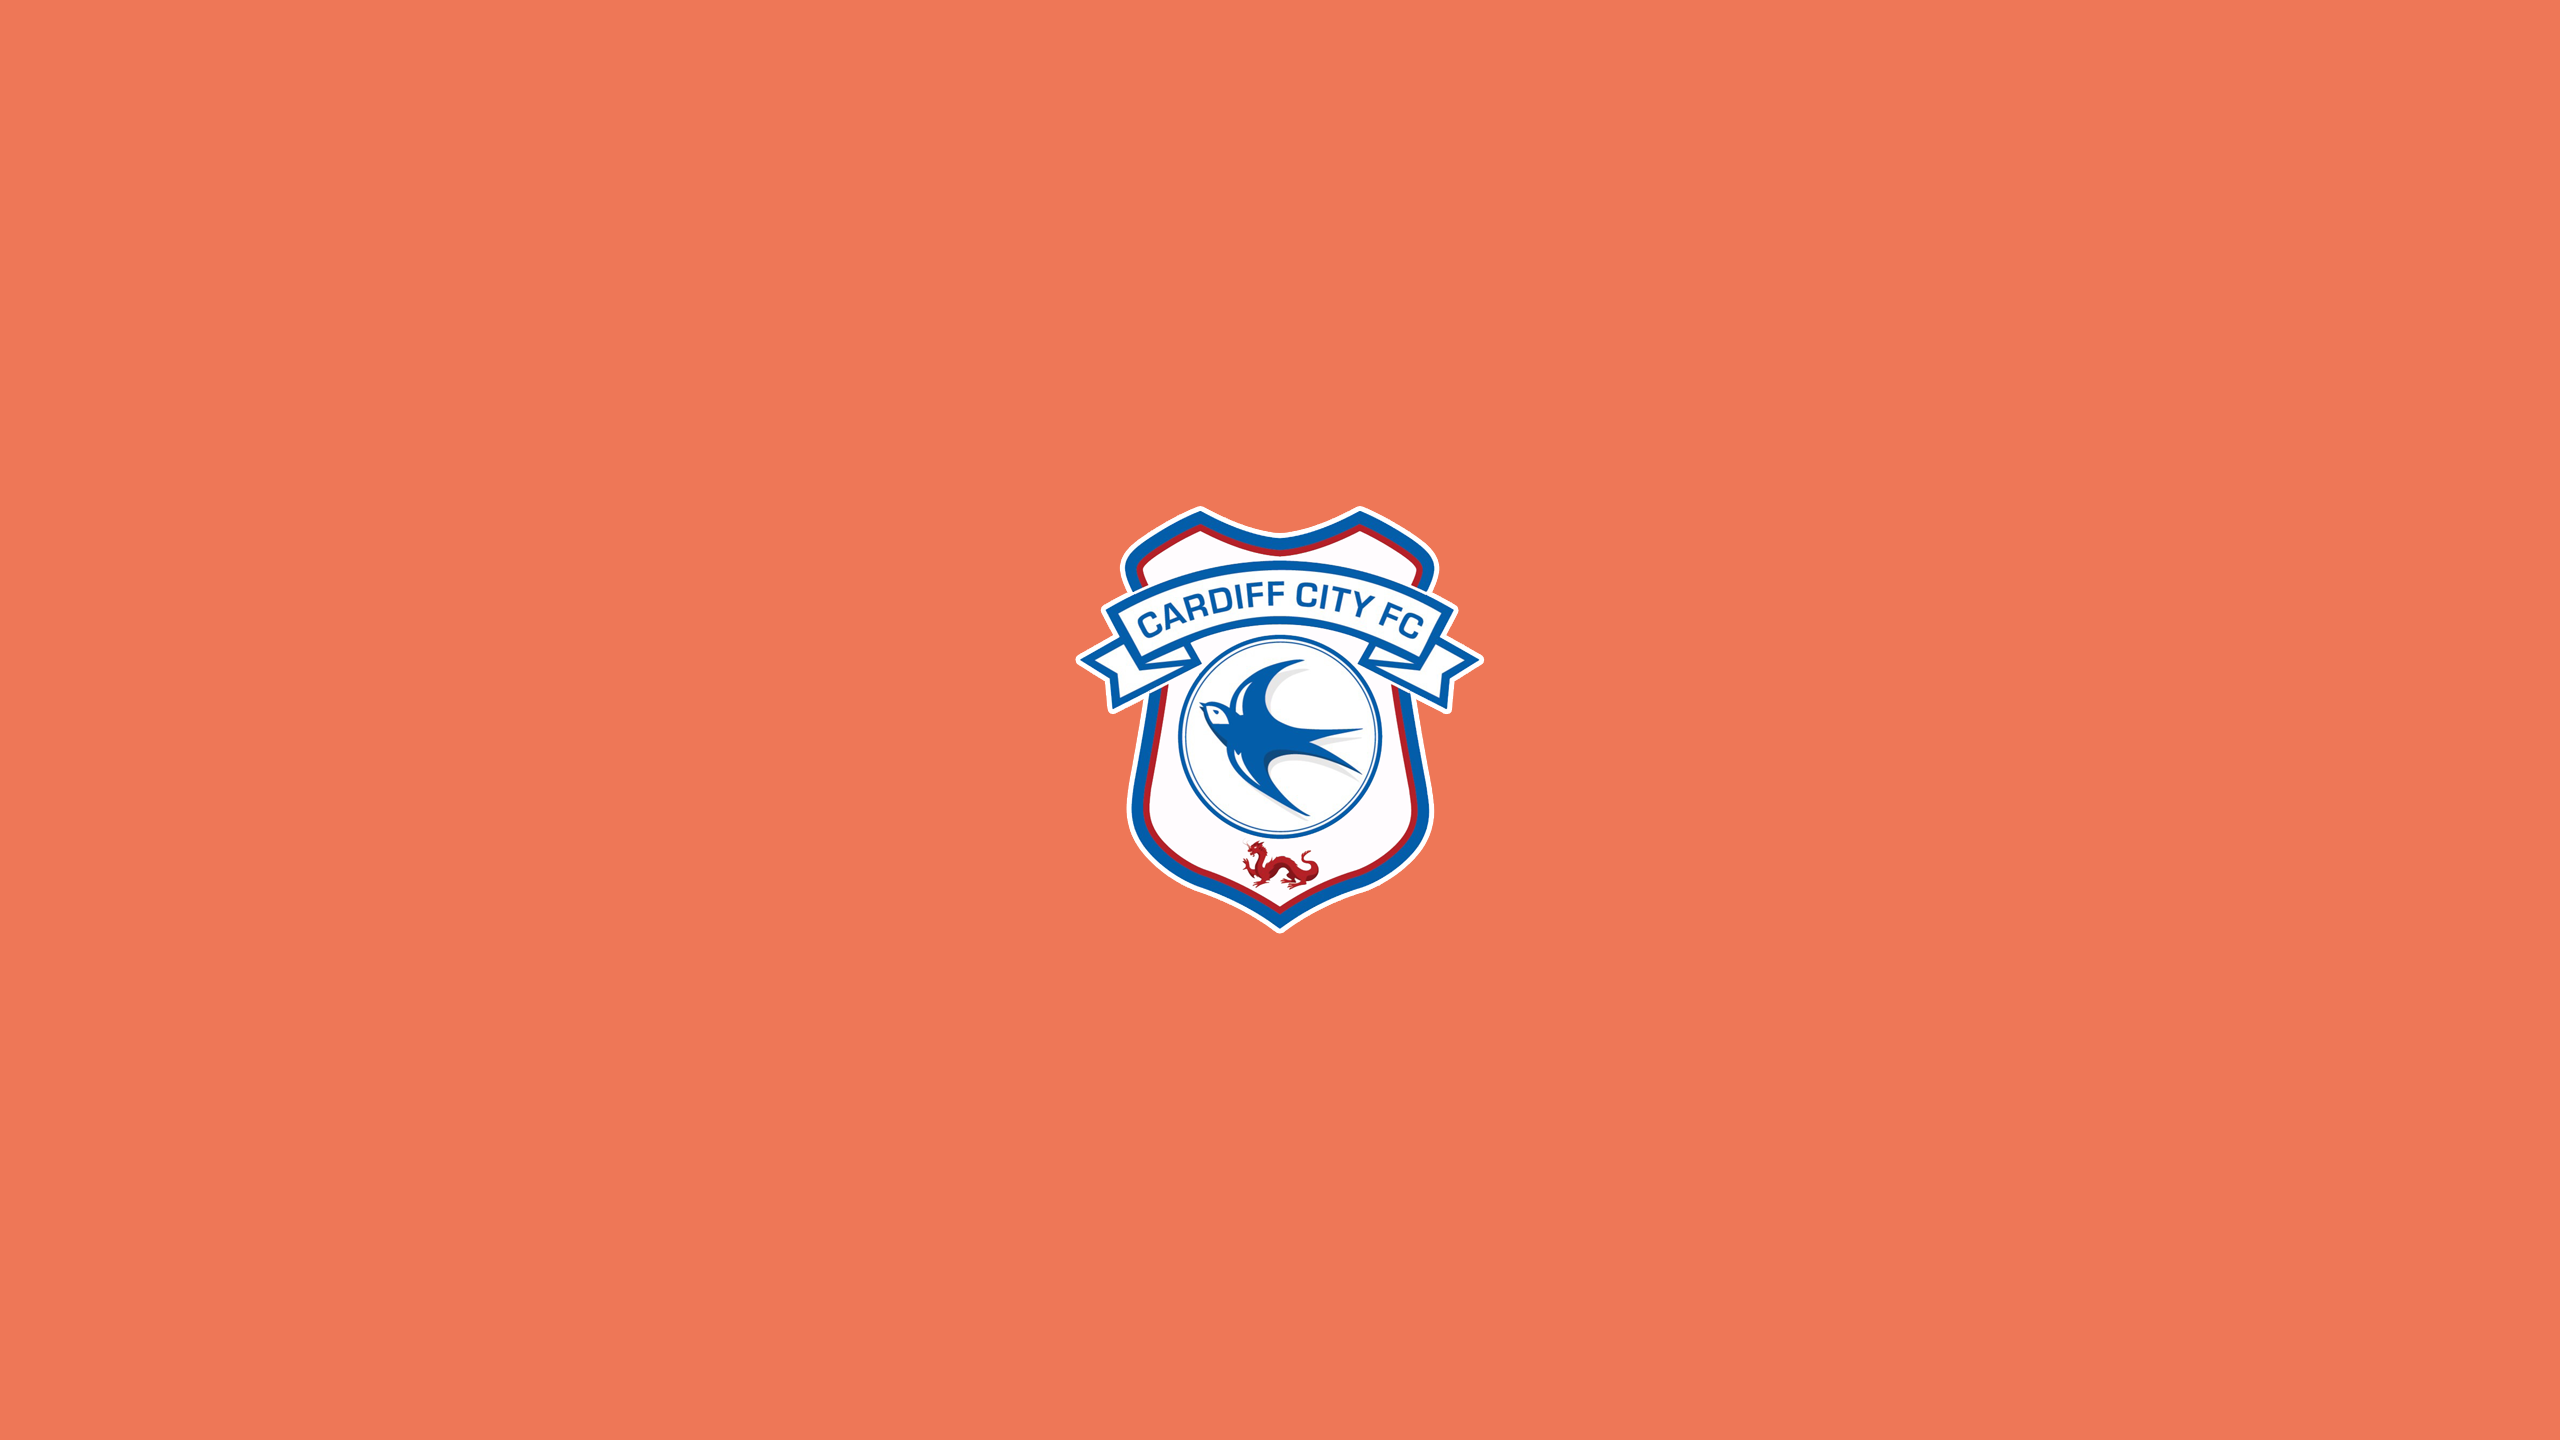 CARDIFF CITY FC  Cardiff city fc, Cardiff city, ? logo